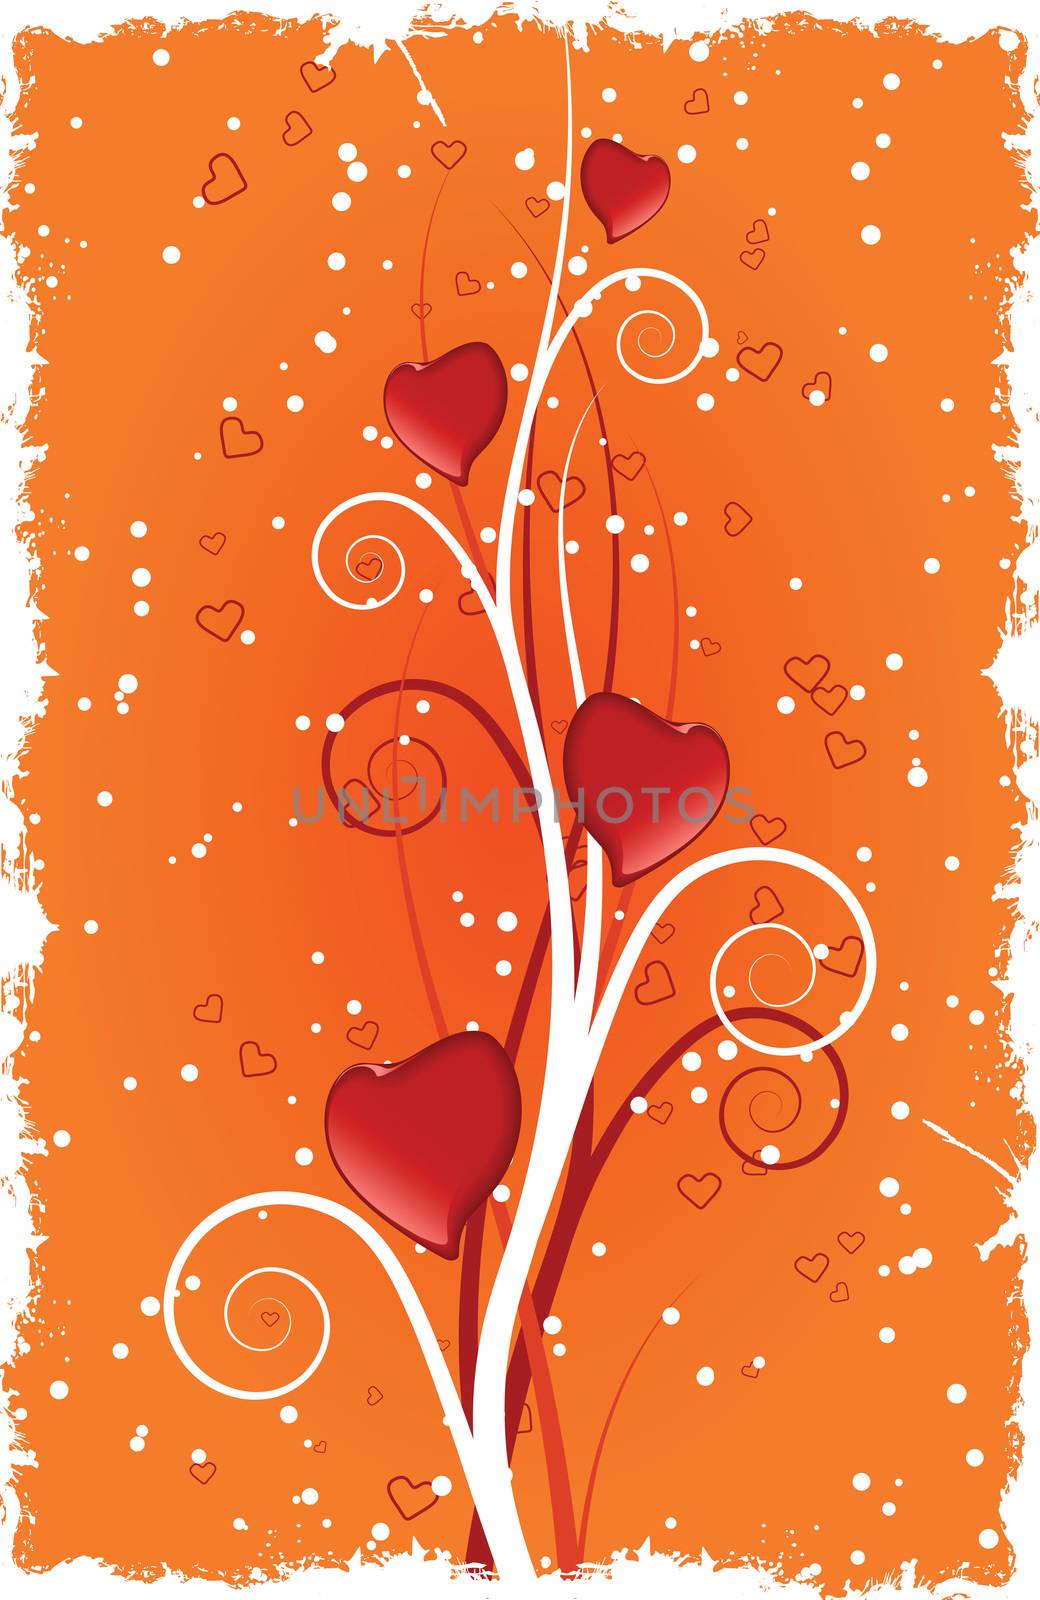 Grunge Valentine's Day Heart with swirls Vector illustration